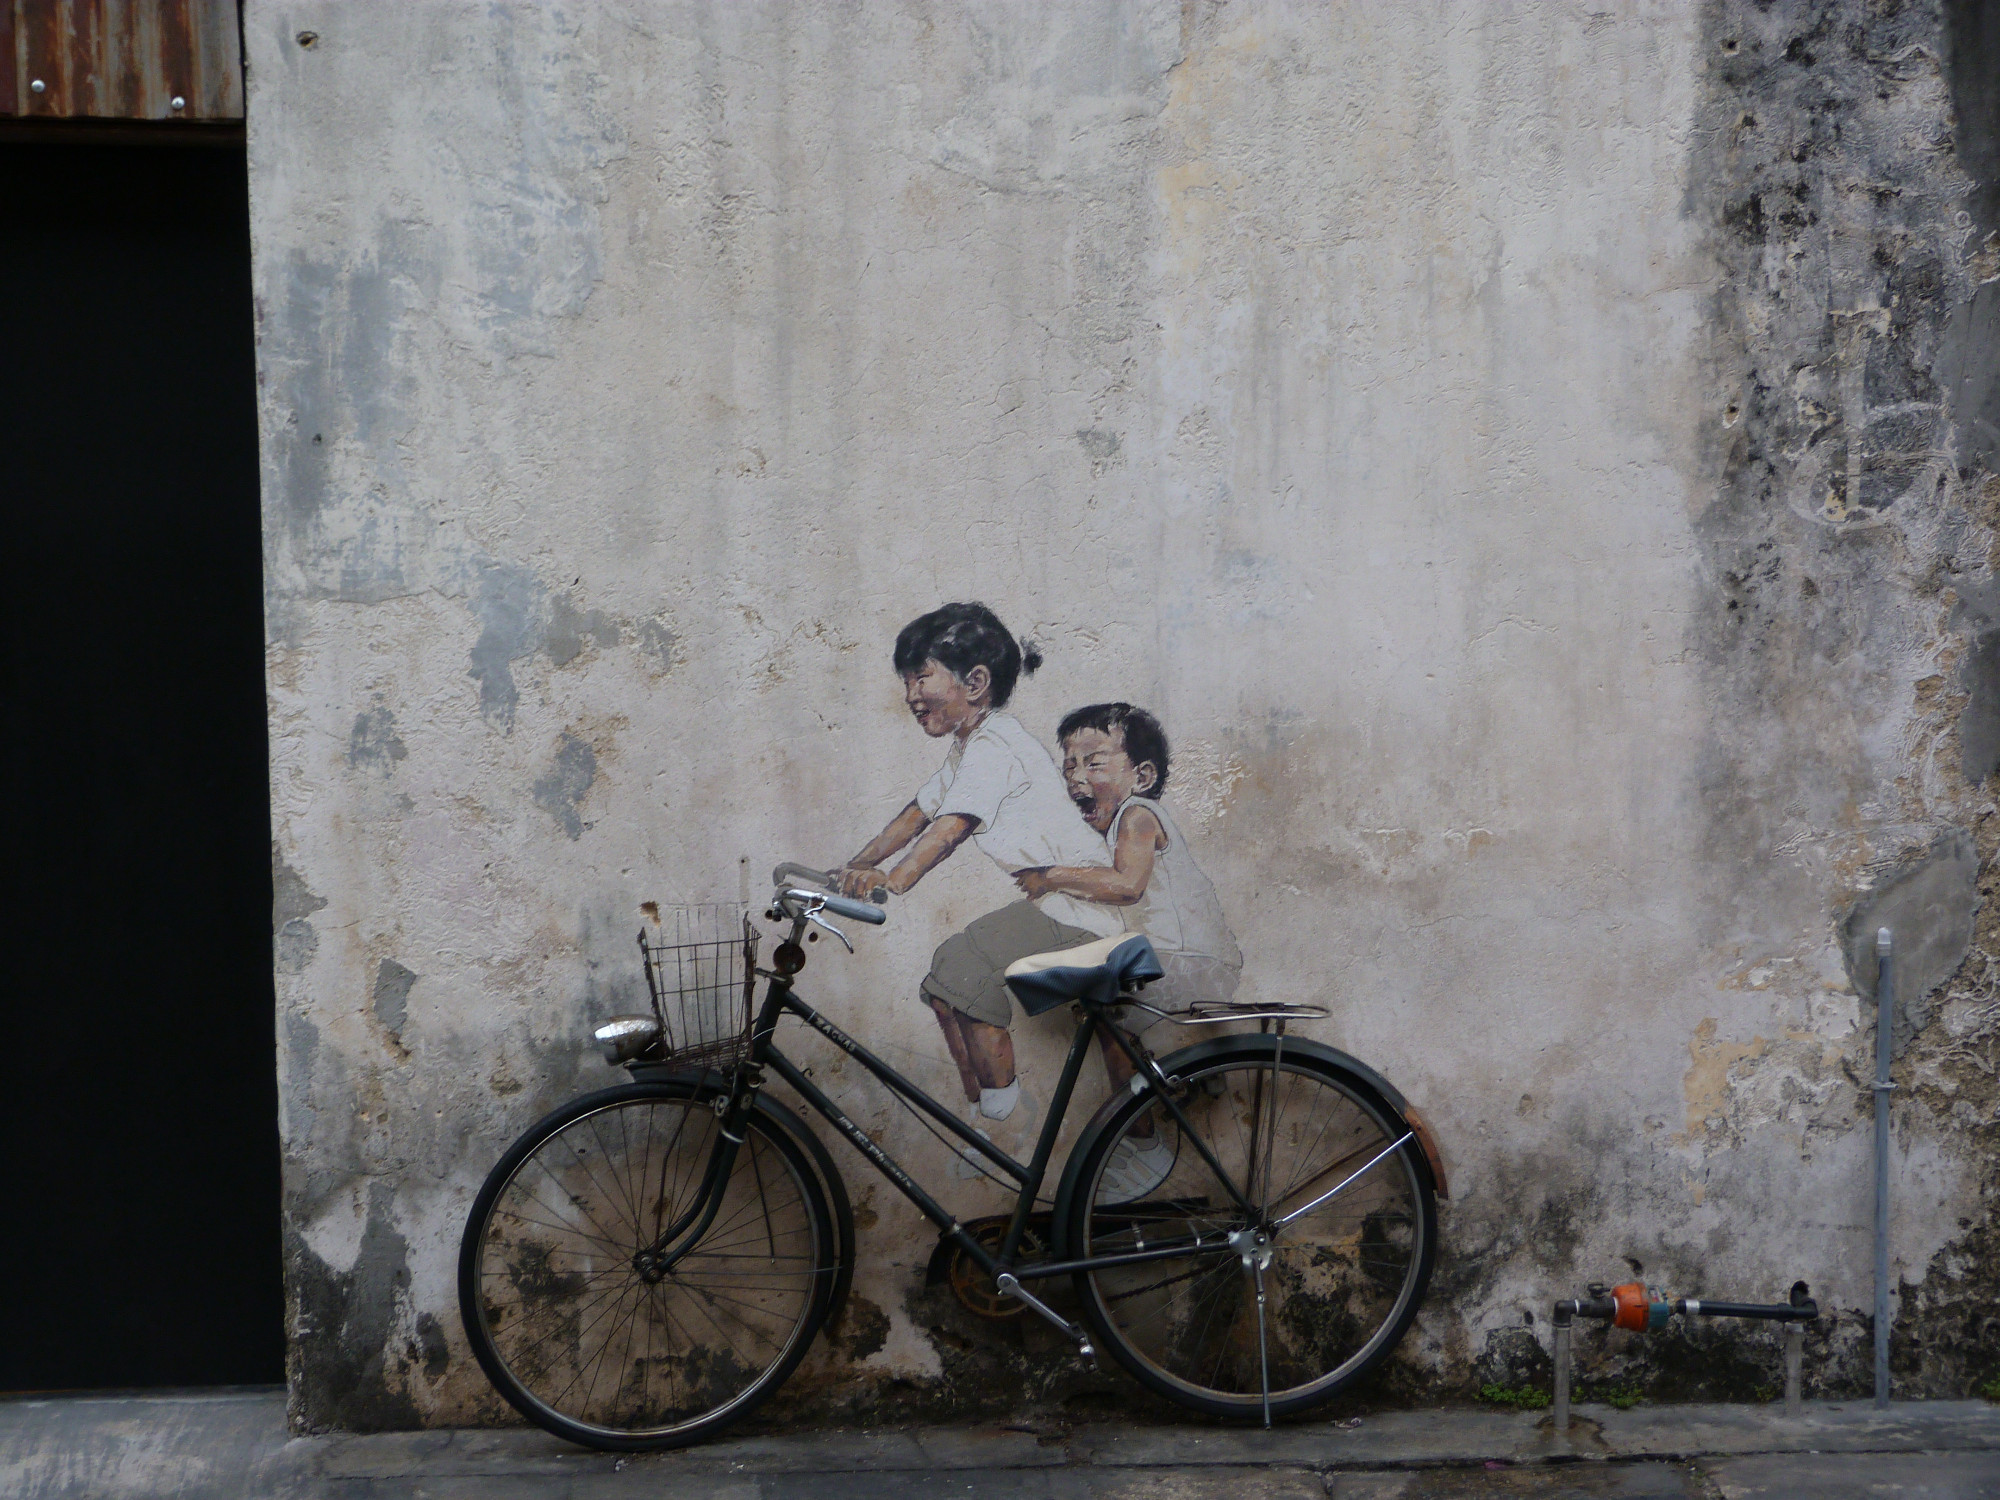 Amenian Street 2 kids on bike mural